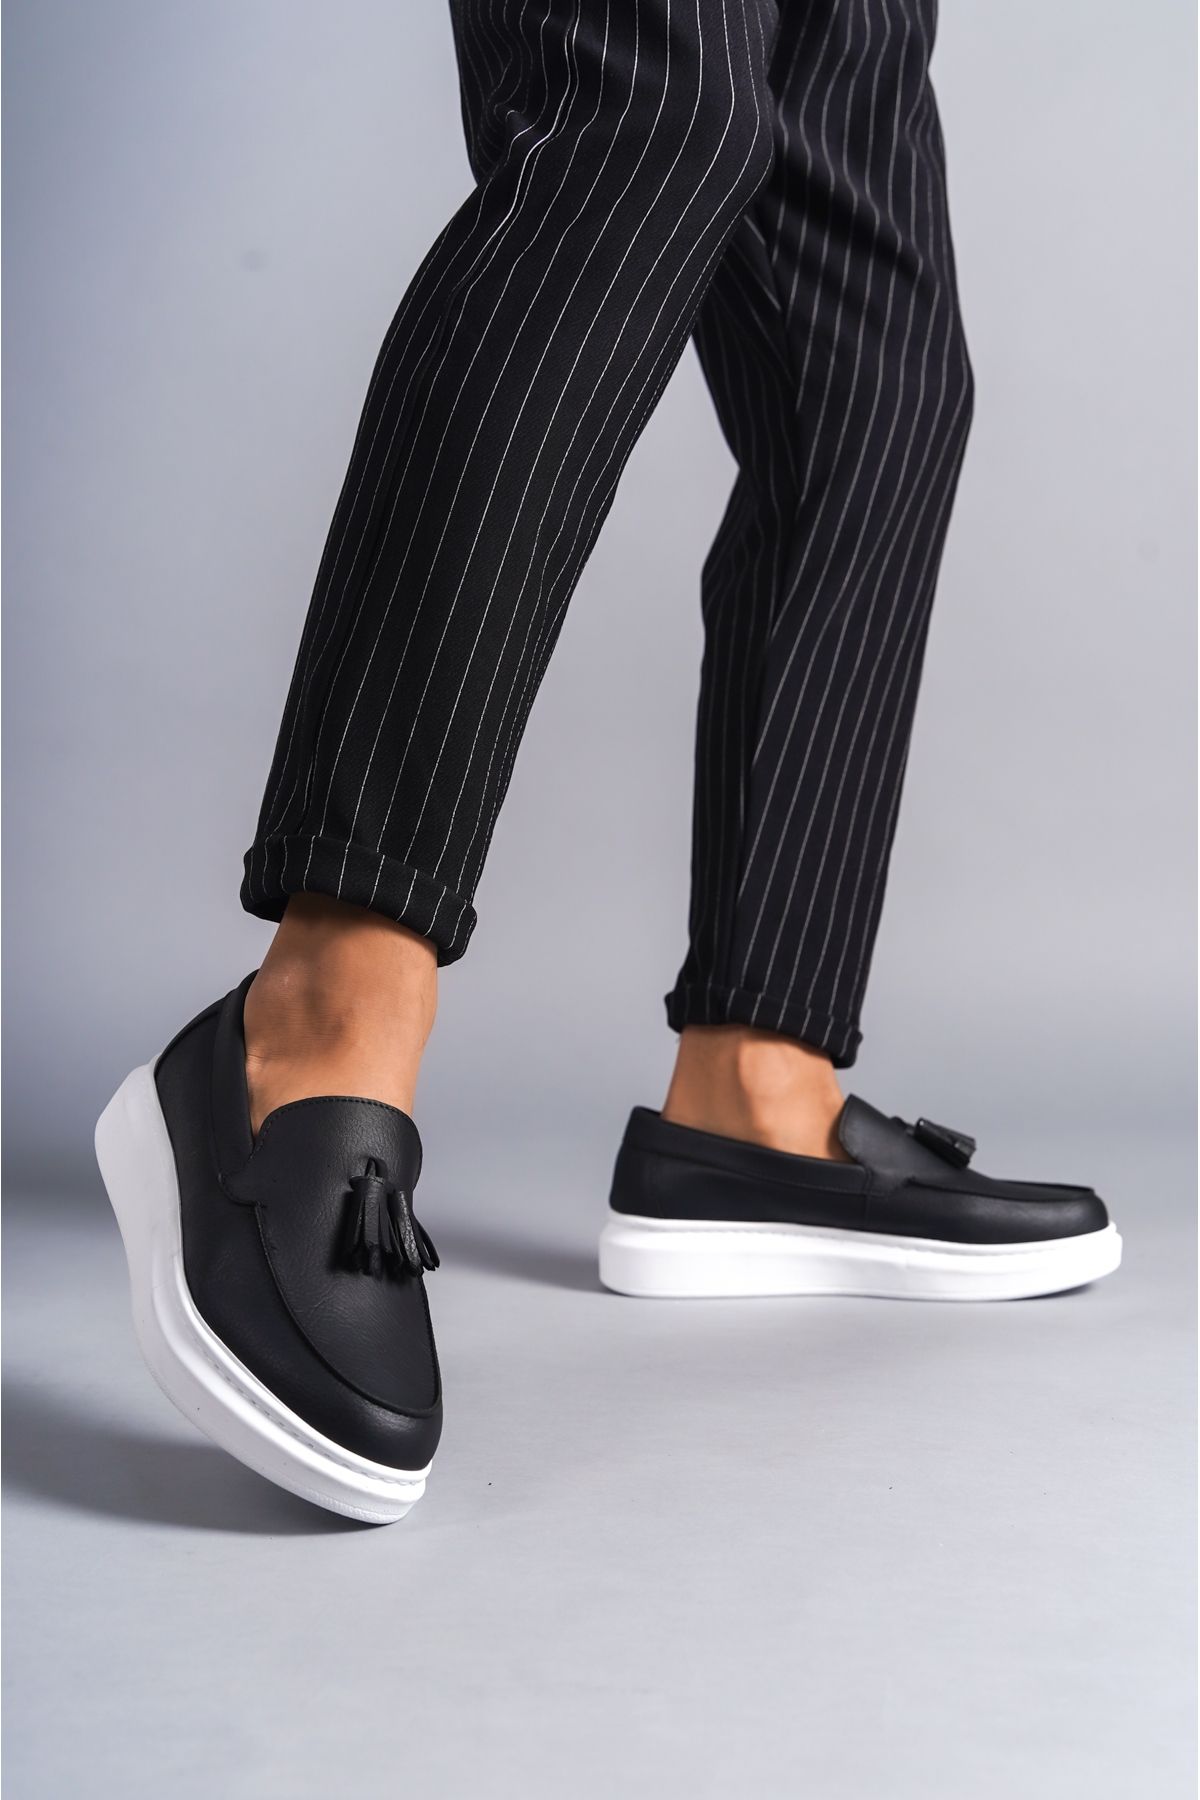 BZ Moda B154 BT Bağcıksız Ortopedik Taban Corcik Tipi Püsküllü Erkek Klasik Günlük Ayakkabı Siyah